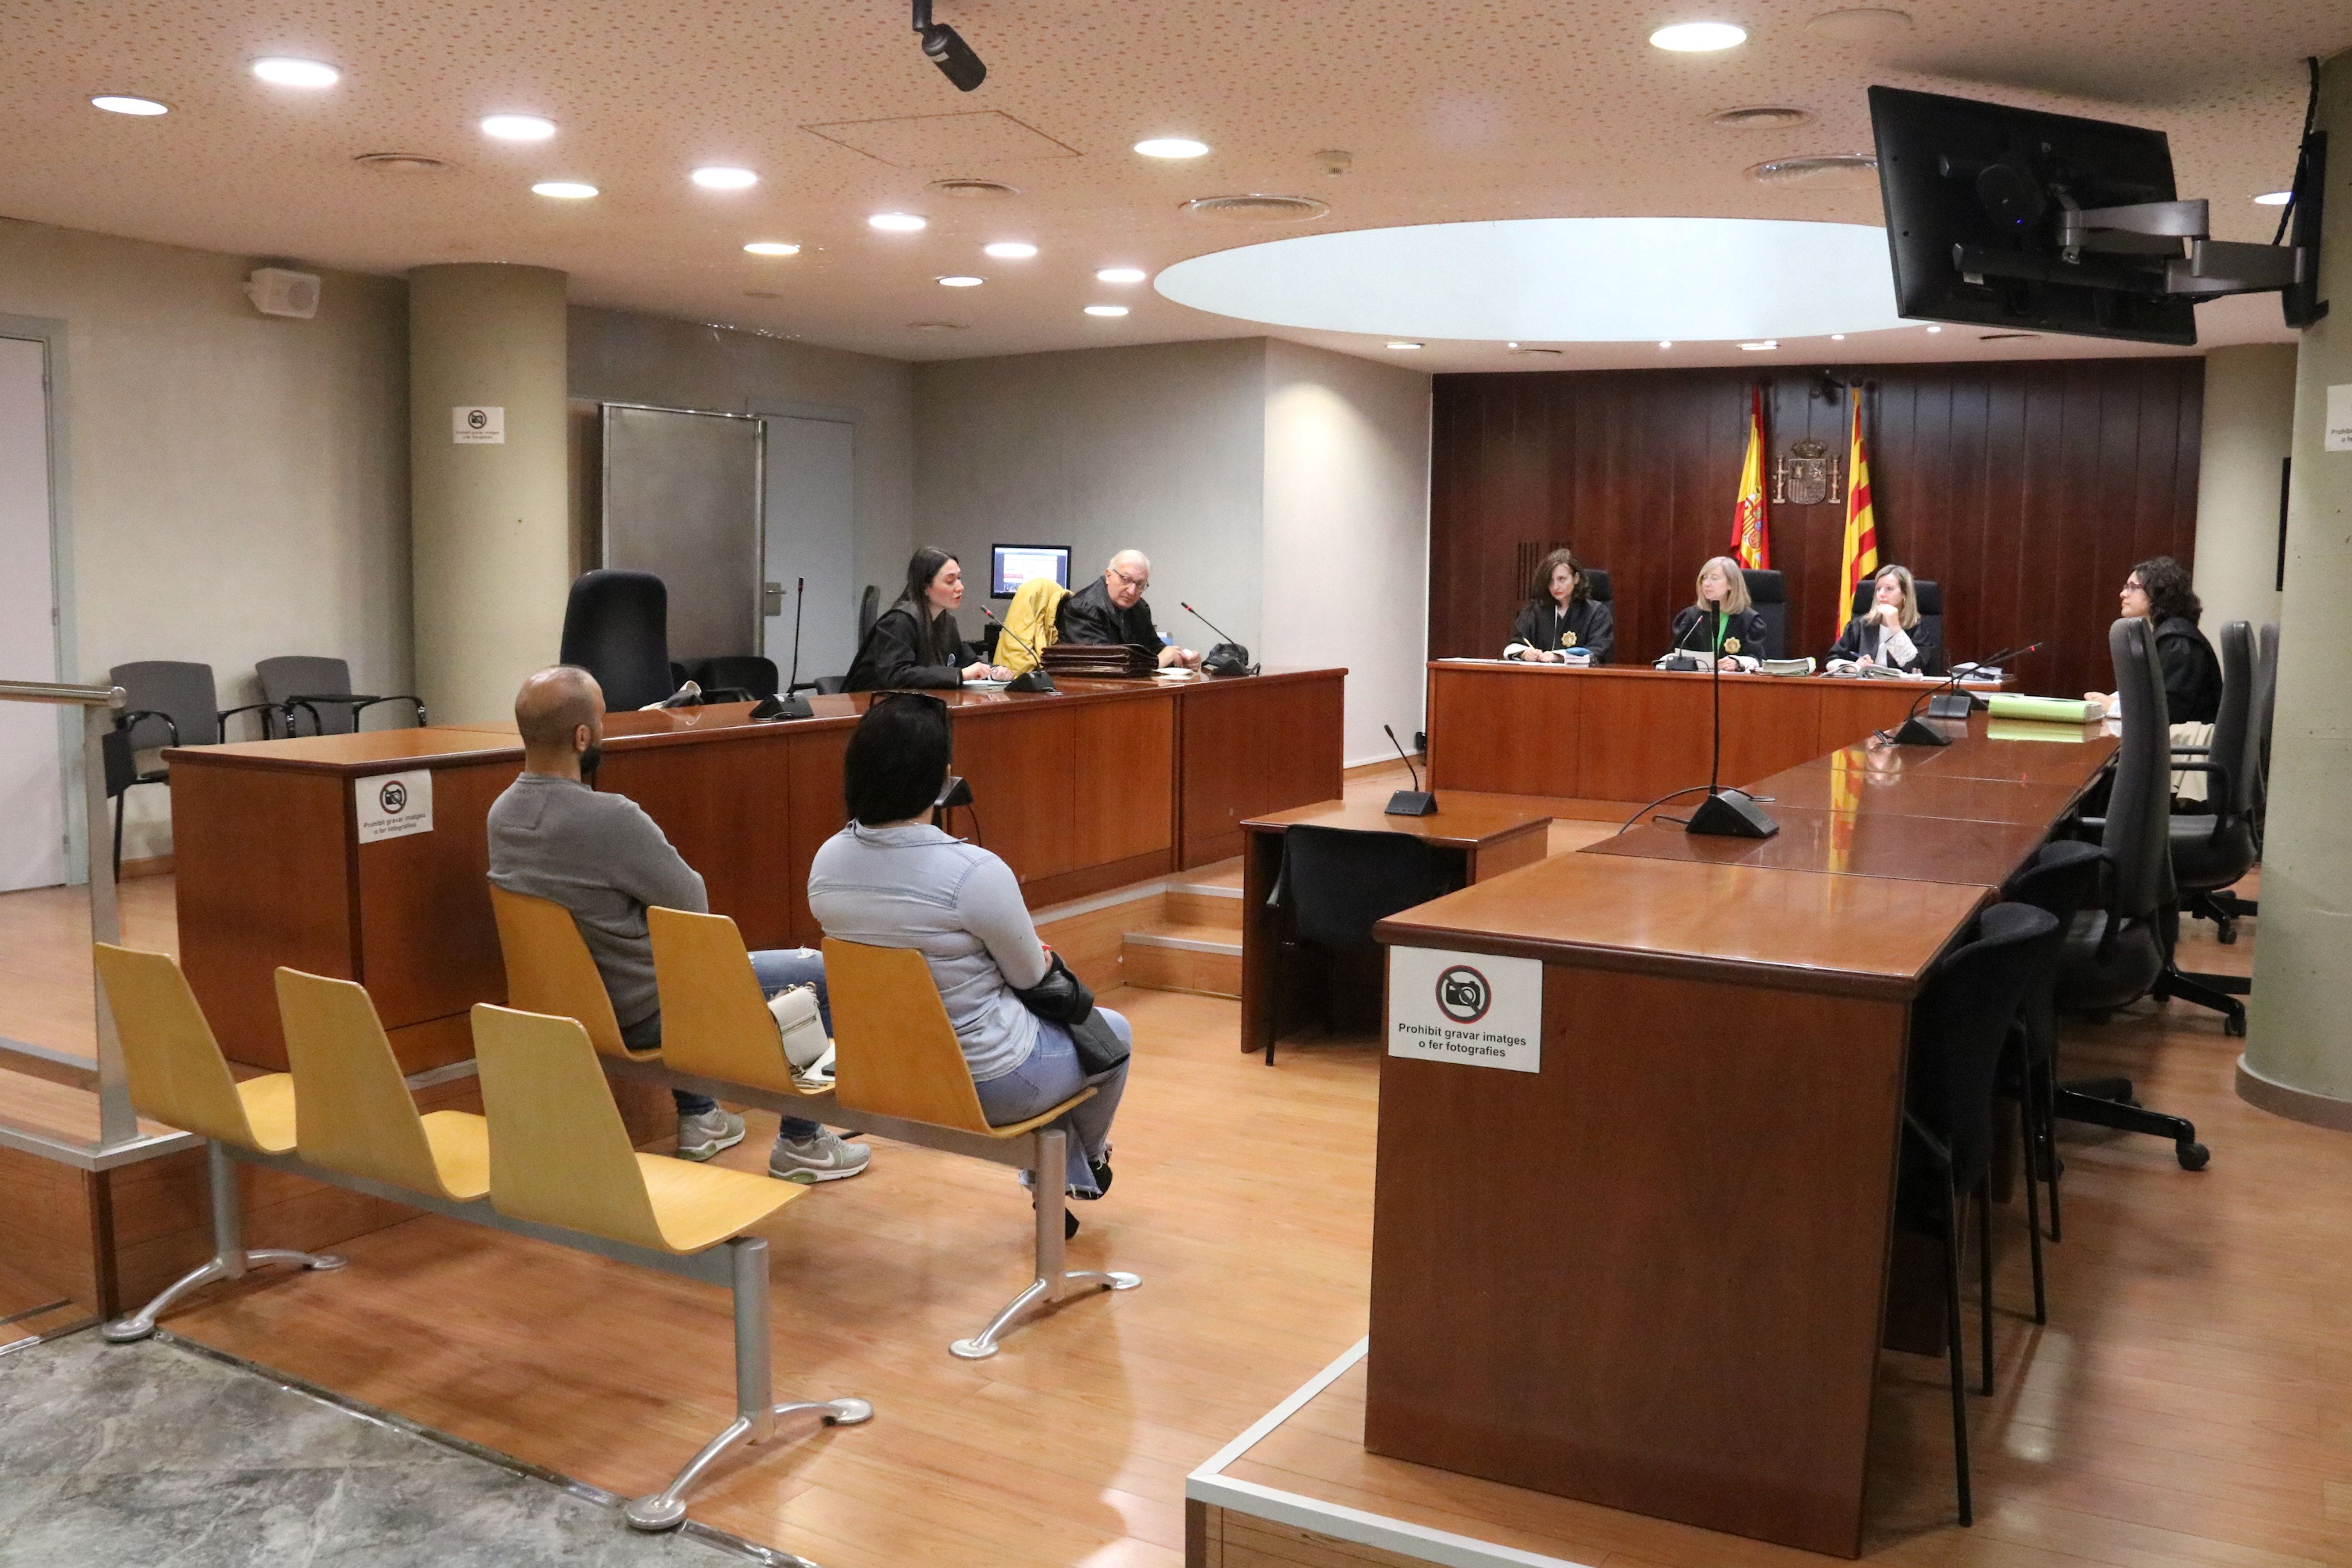 Els condemnats per intent de segrest, durant el judici a l'Audiènica de Lleida